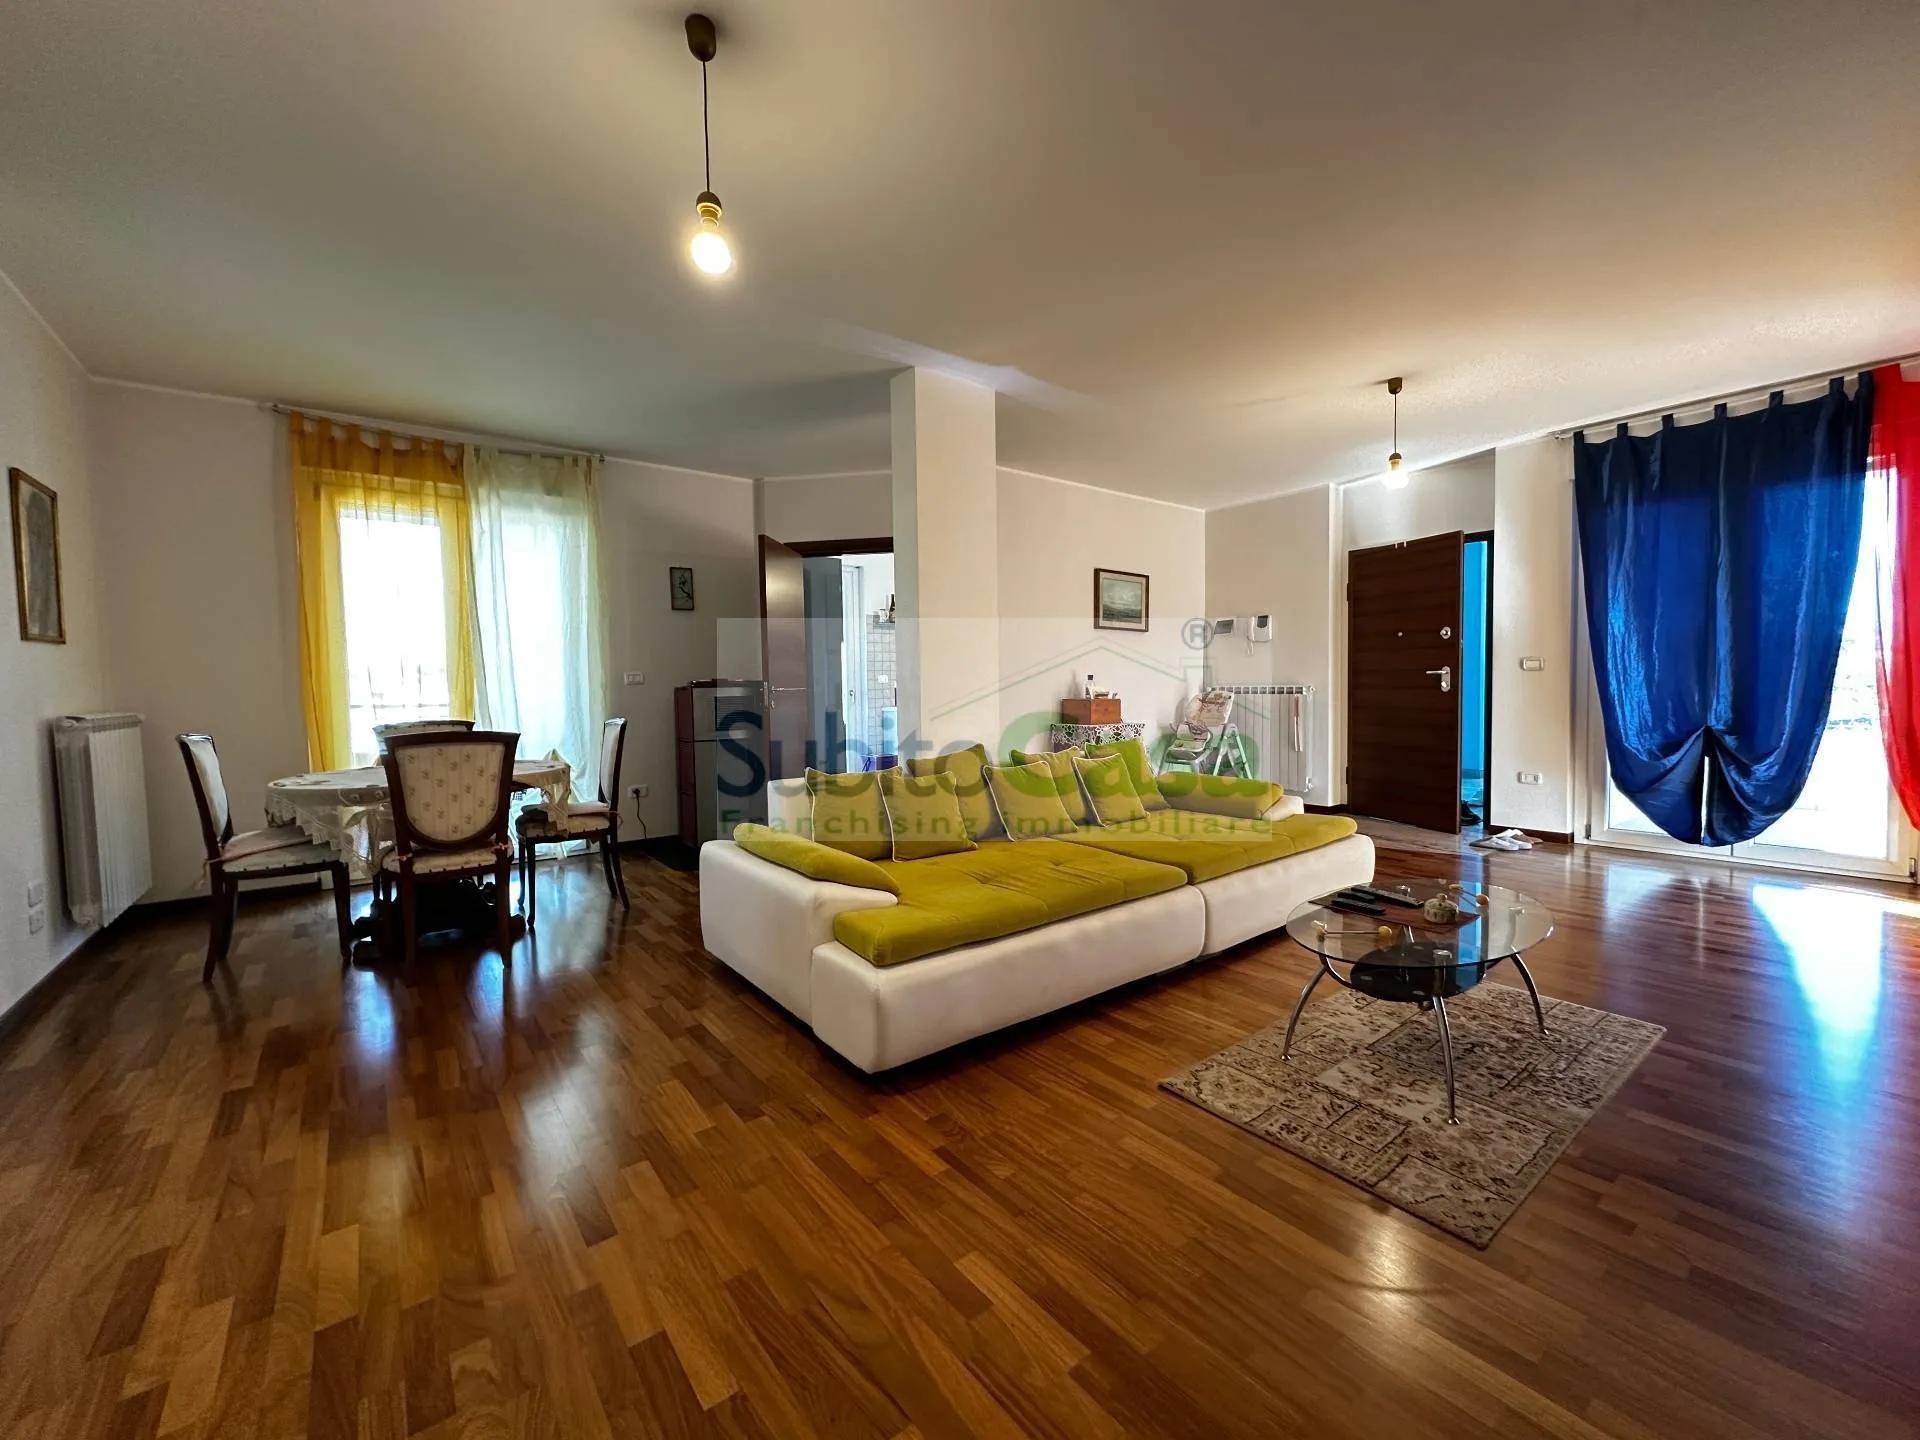 Immagine per Appartamento in vendita a San Giovanni Teatino Via Ciancetta